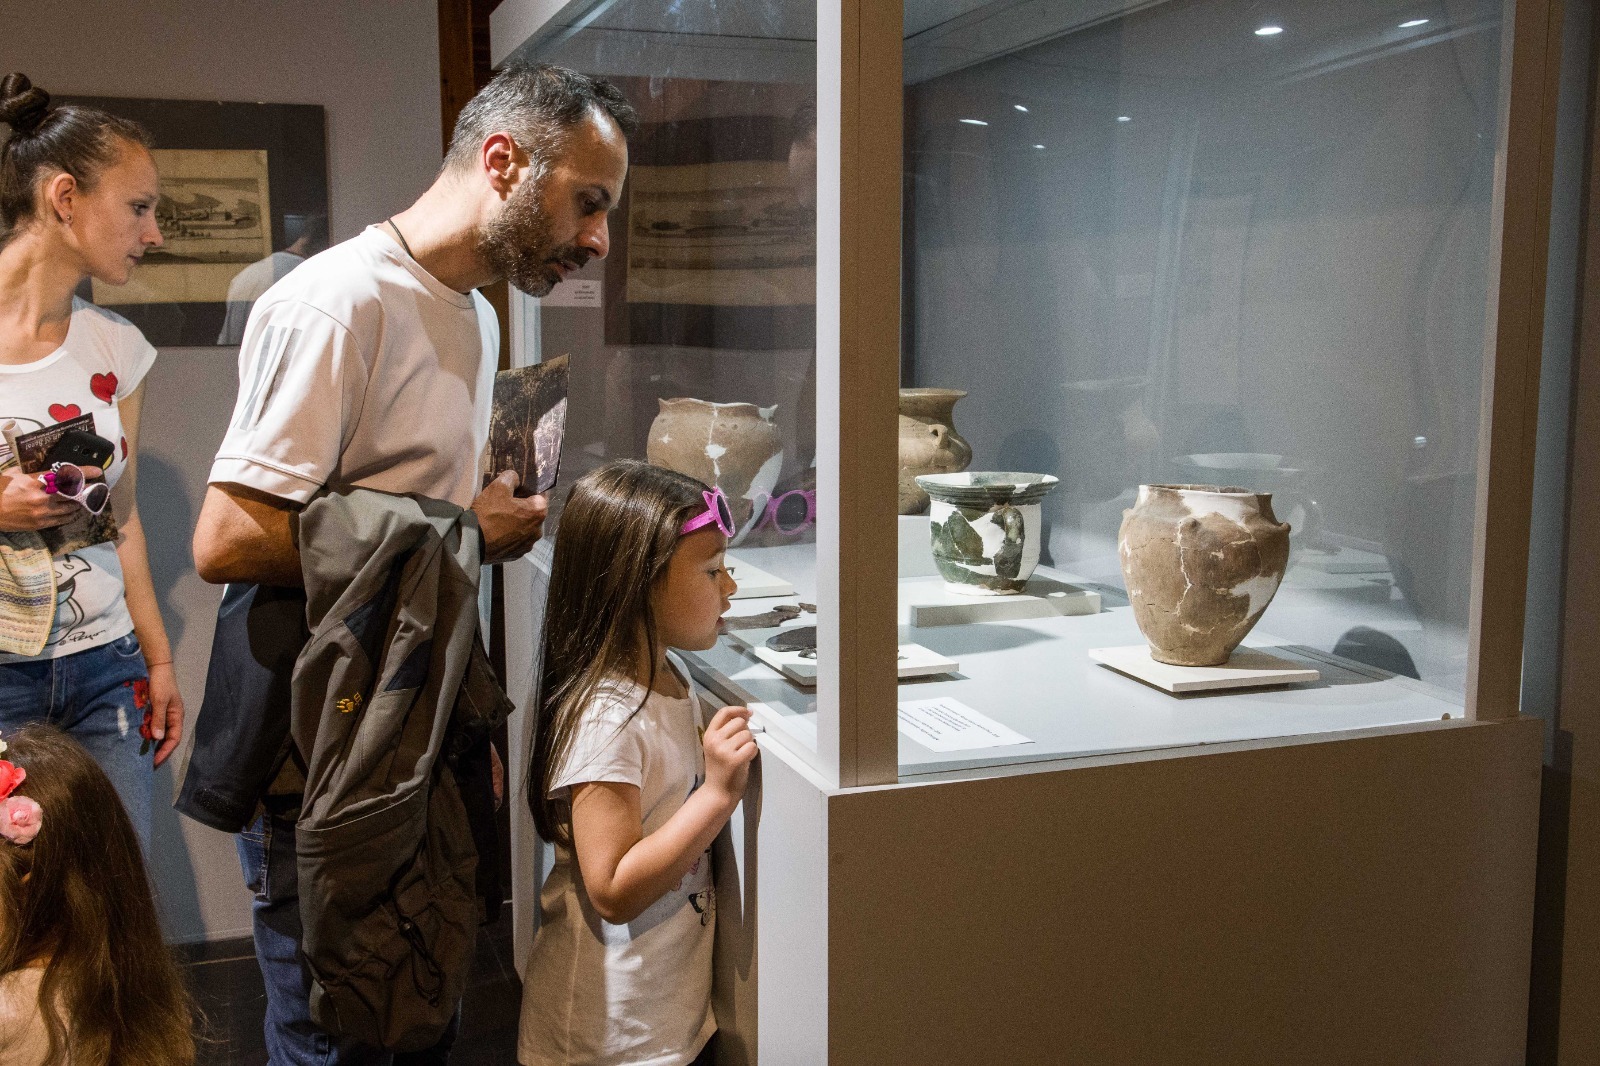 De 1 Iunie, copiii și părinții vizitează gratuit Muzeul Național al Banatului